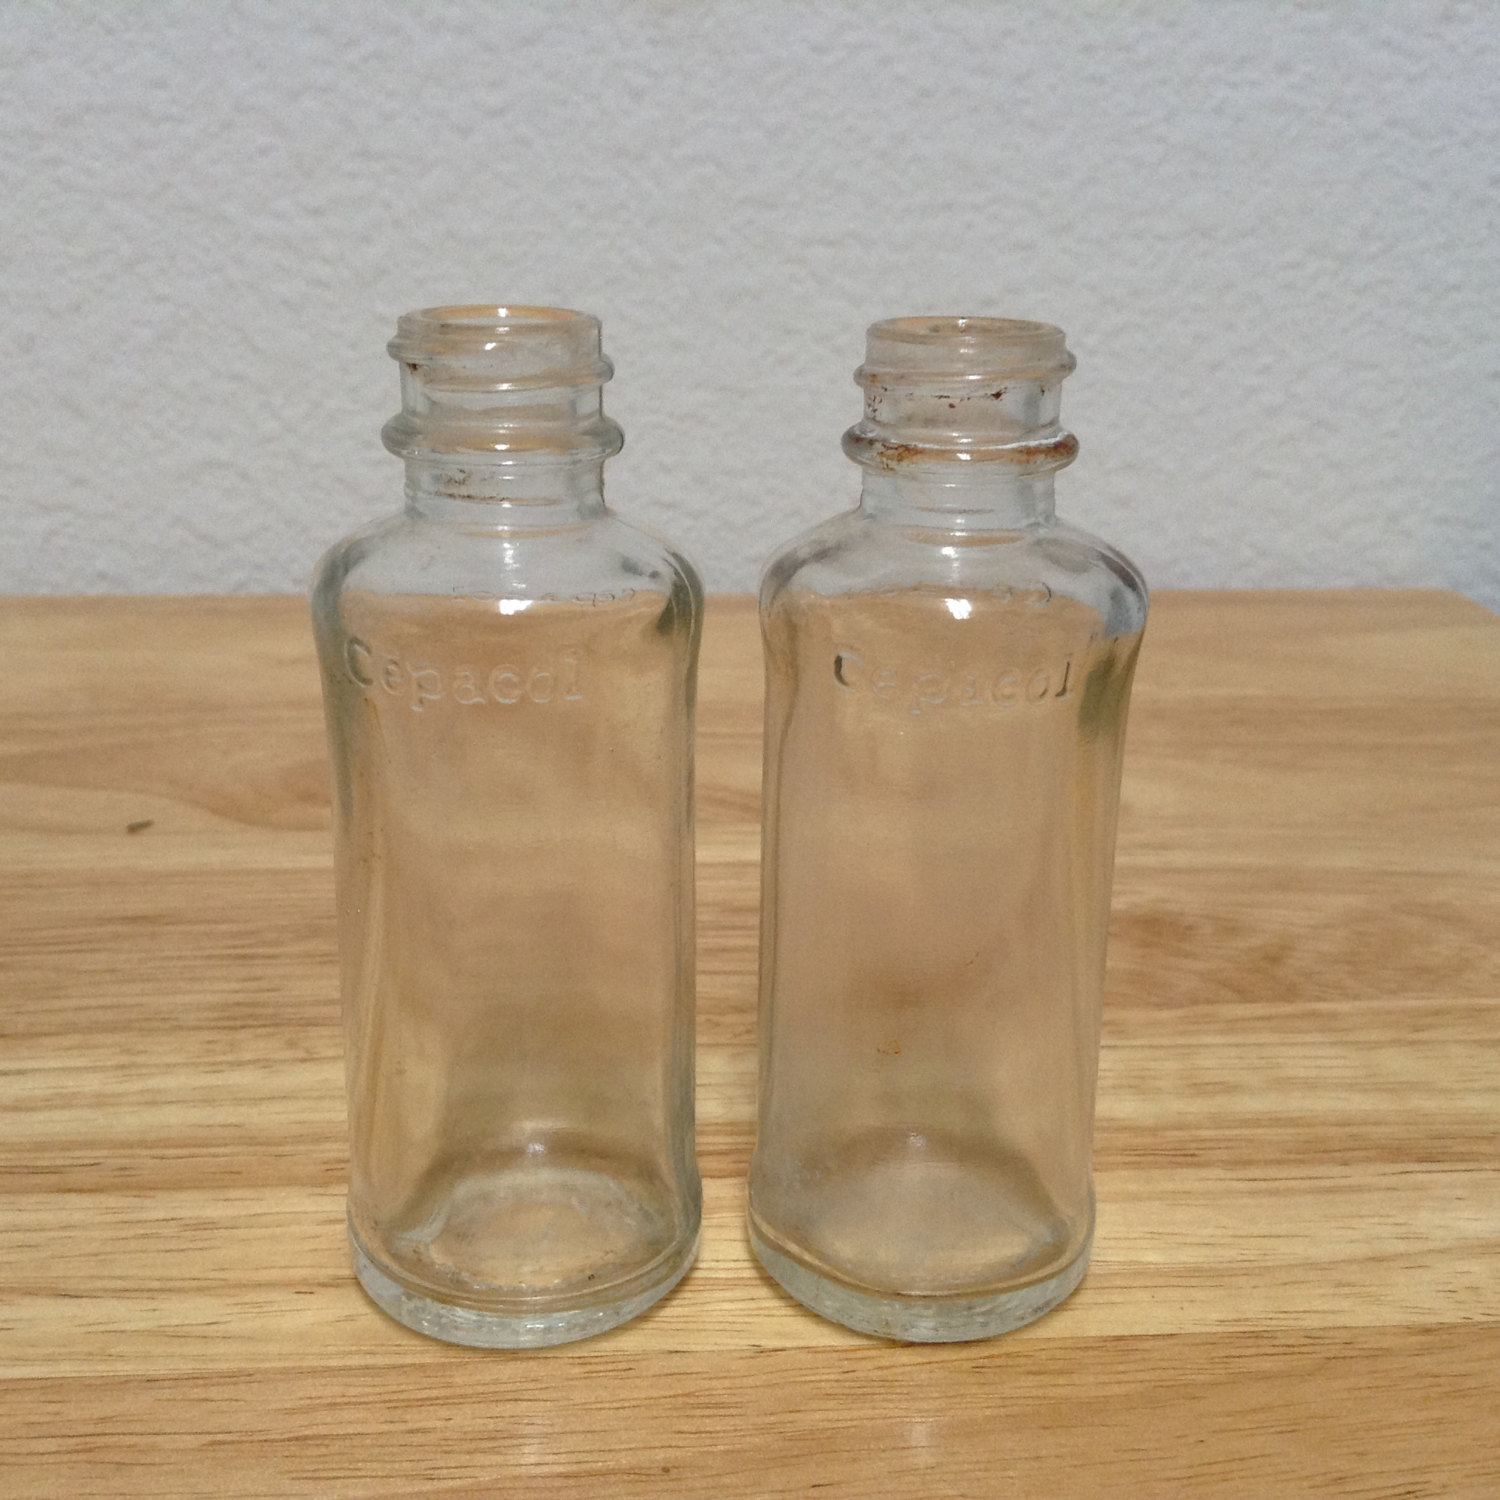 Vintage Cepacol Glass Bottles Vintage Clear Glass Medicine